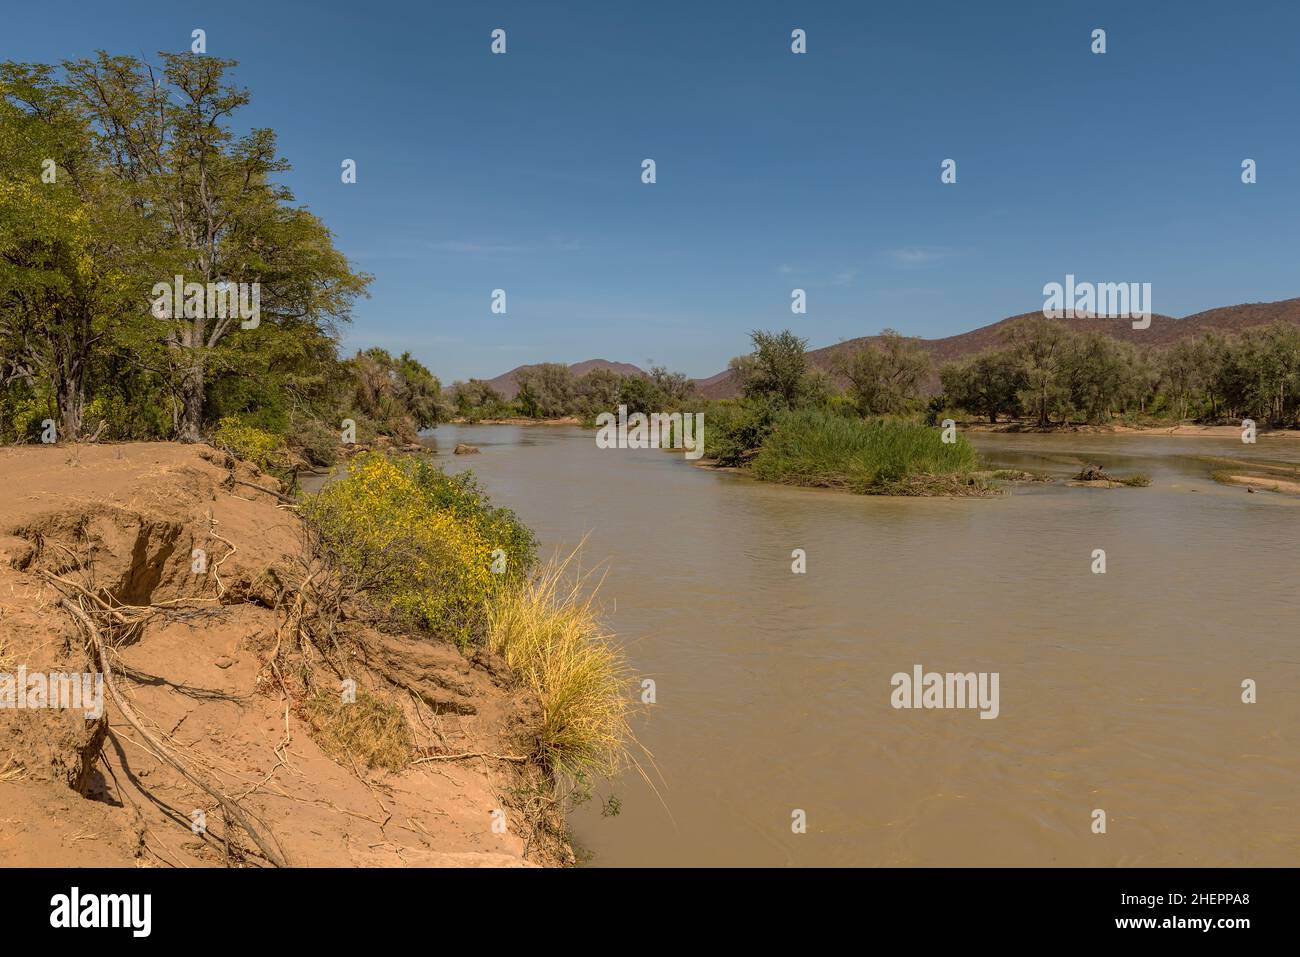 Paesaggio sul fiume Kunene, fiumi di confine della Namibia e Angola, Epupa, Namibia Foto Stock